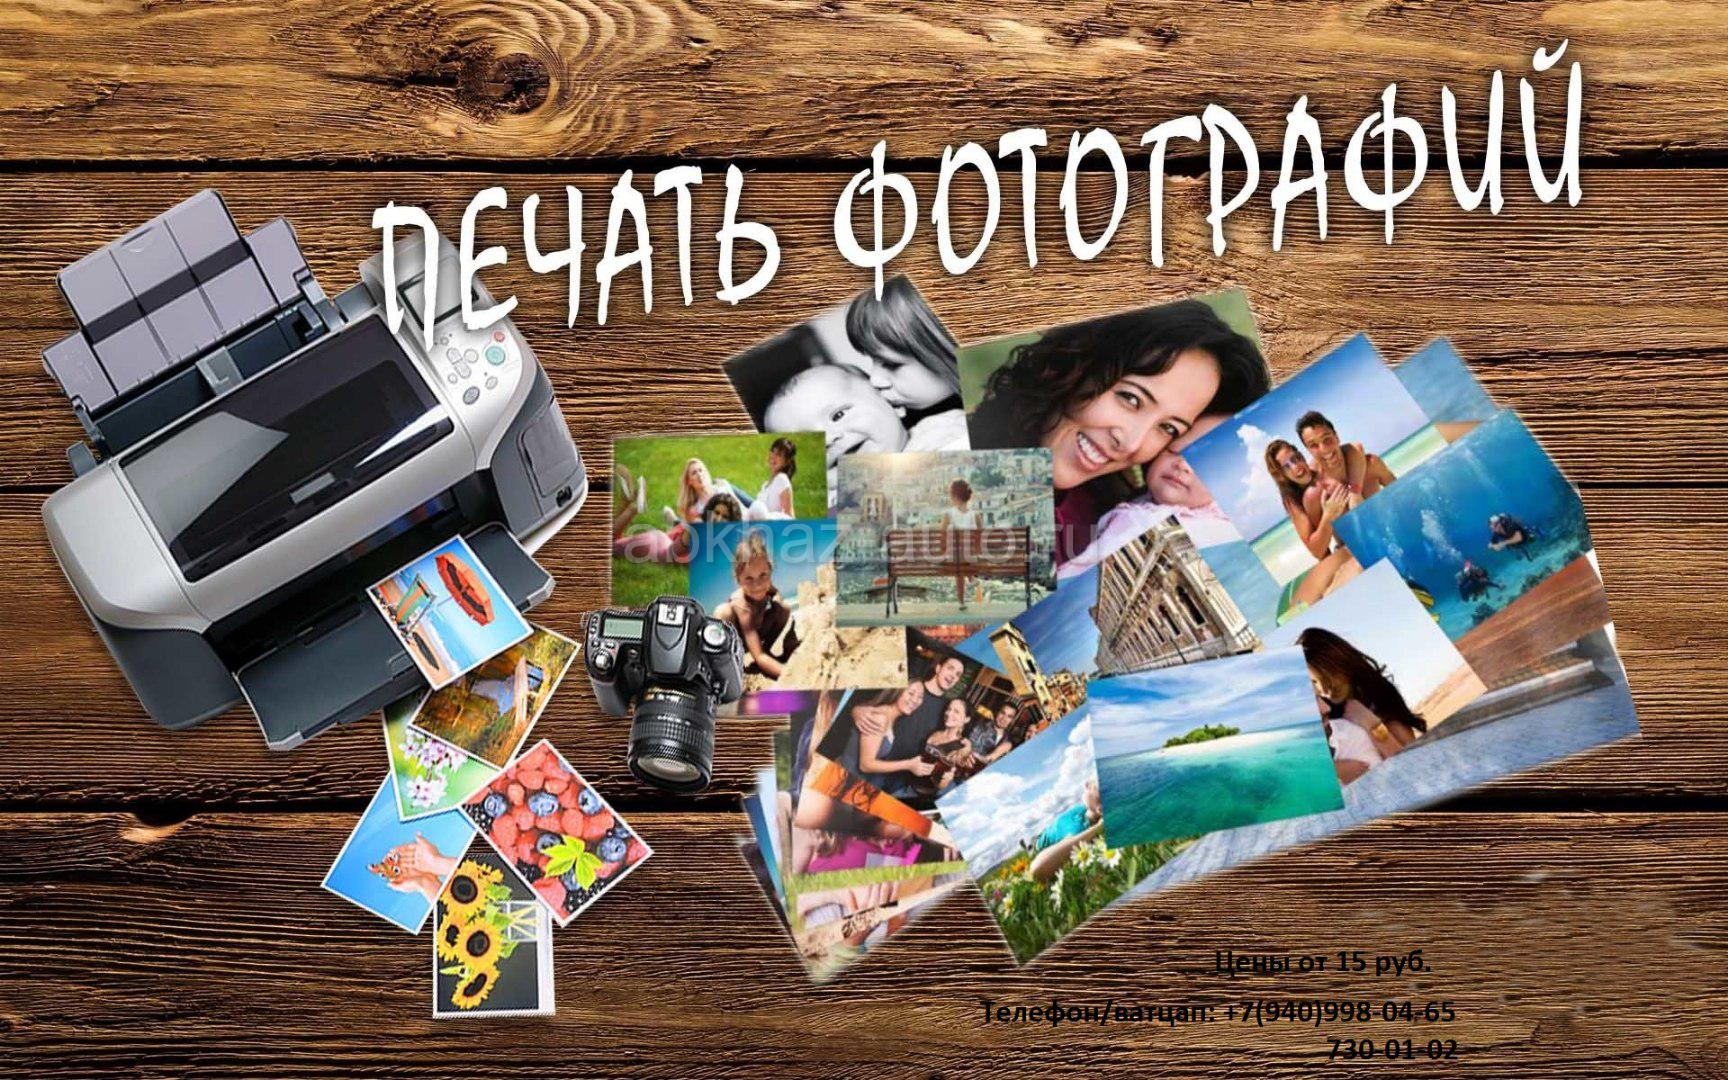 печать фотографий 10х15 дешево москва через интернет